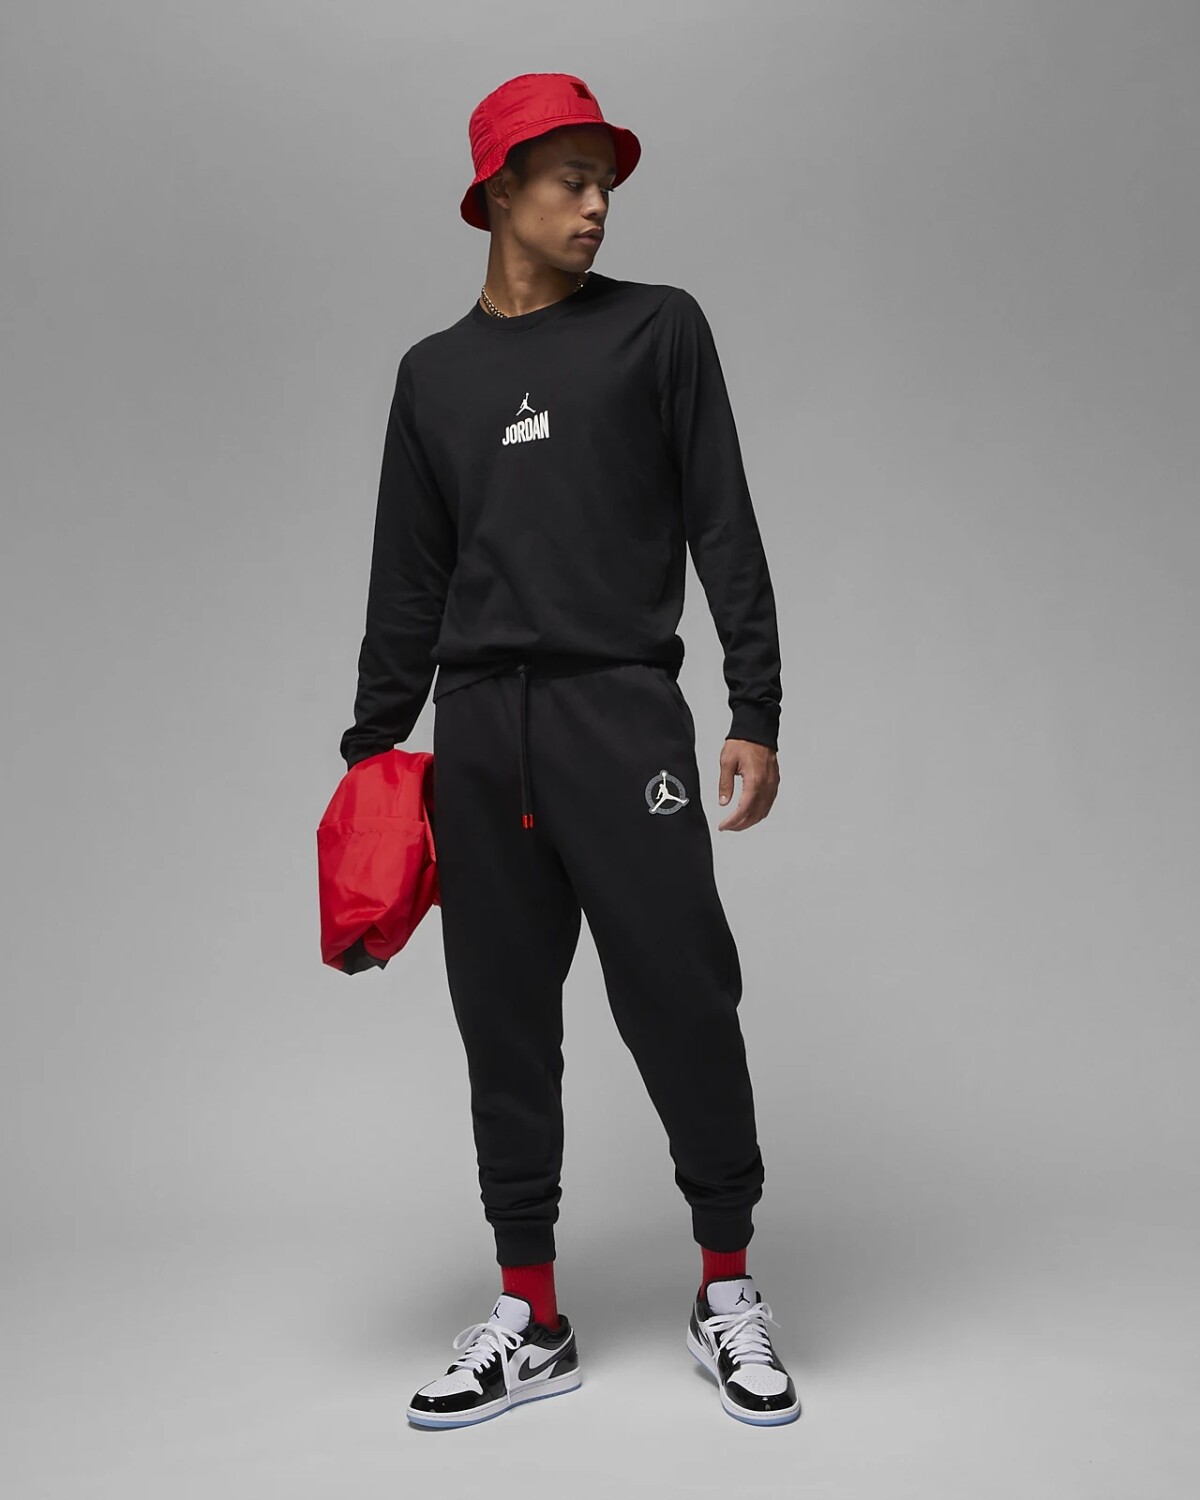 Pantalon Nike Jordan Hombre Flt Mvp Hbr Flc 2 Black/Rush - S/C — Menpi